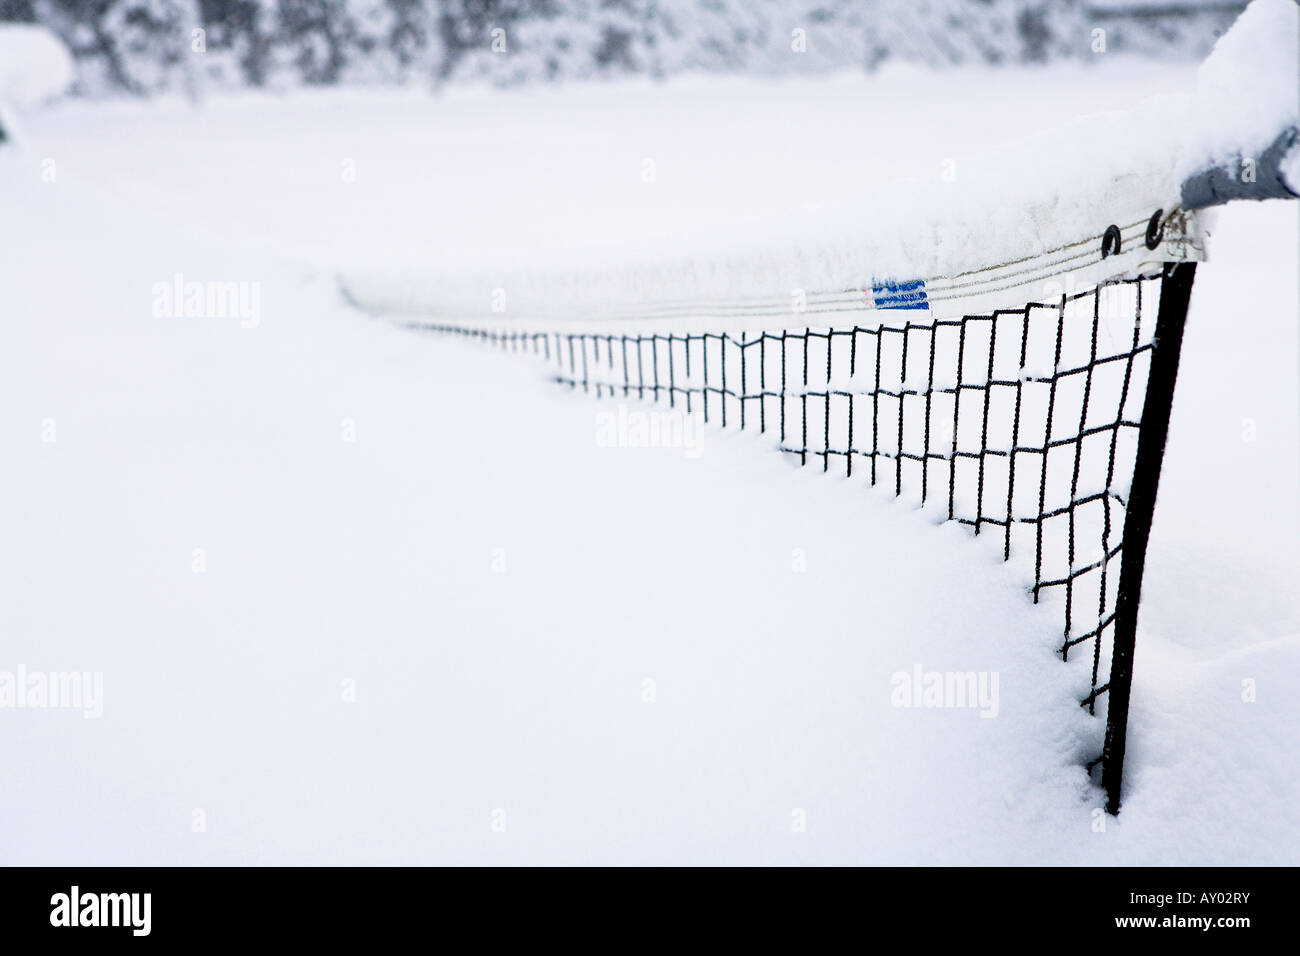 Filet de tennis enterrés dans des tapis de neige hiver Alaska USA Banque D'Images